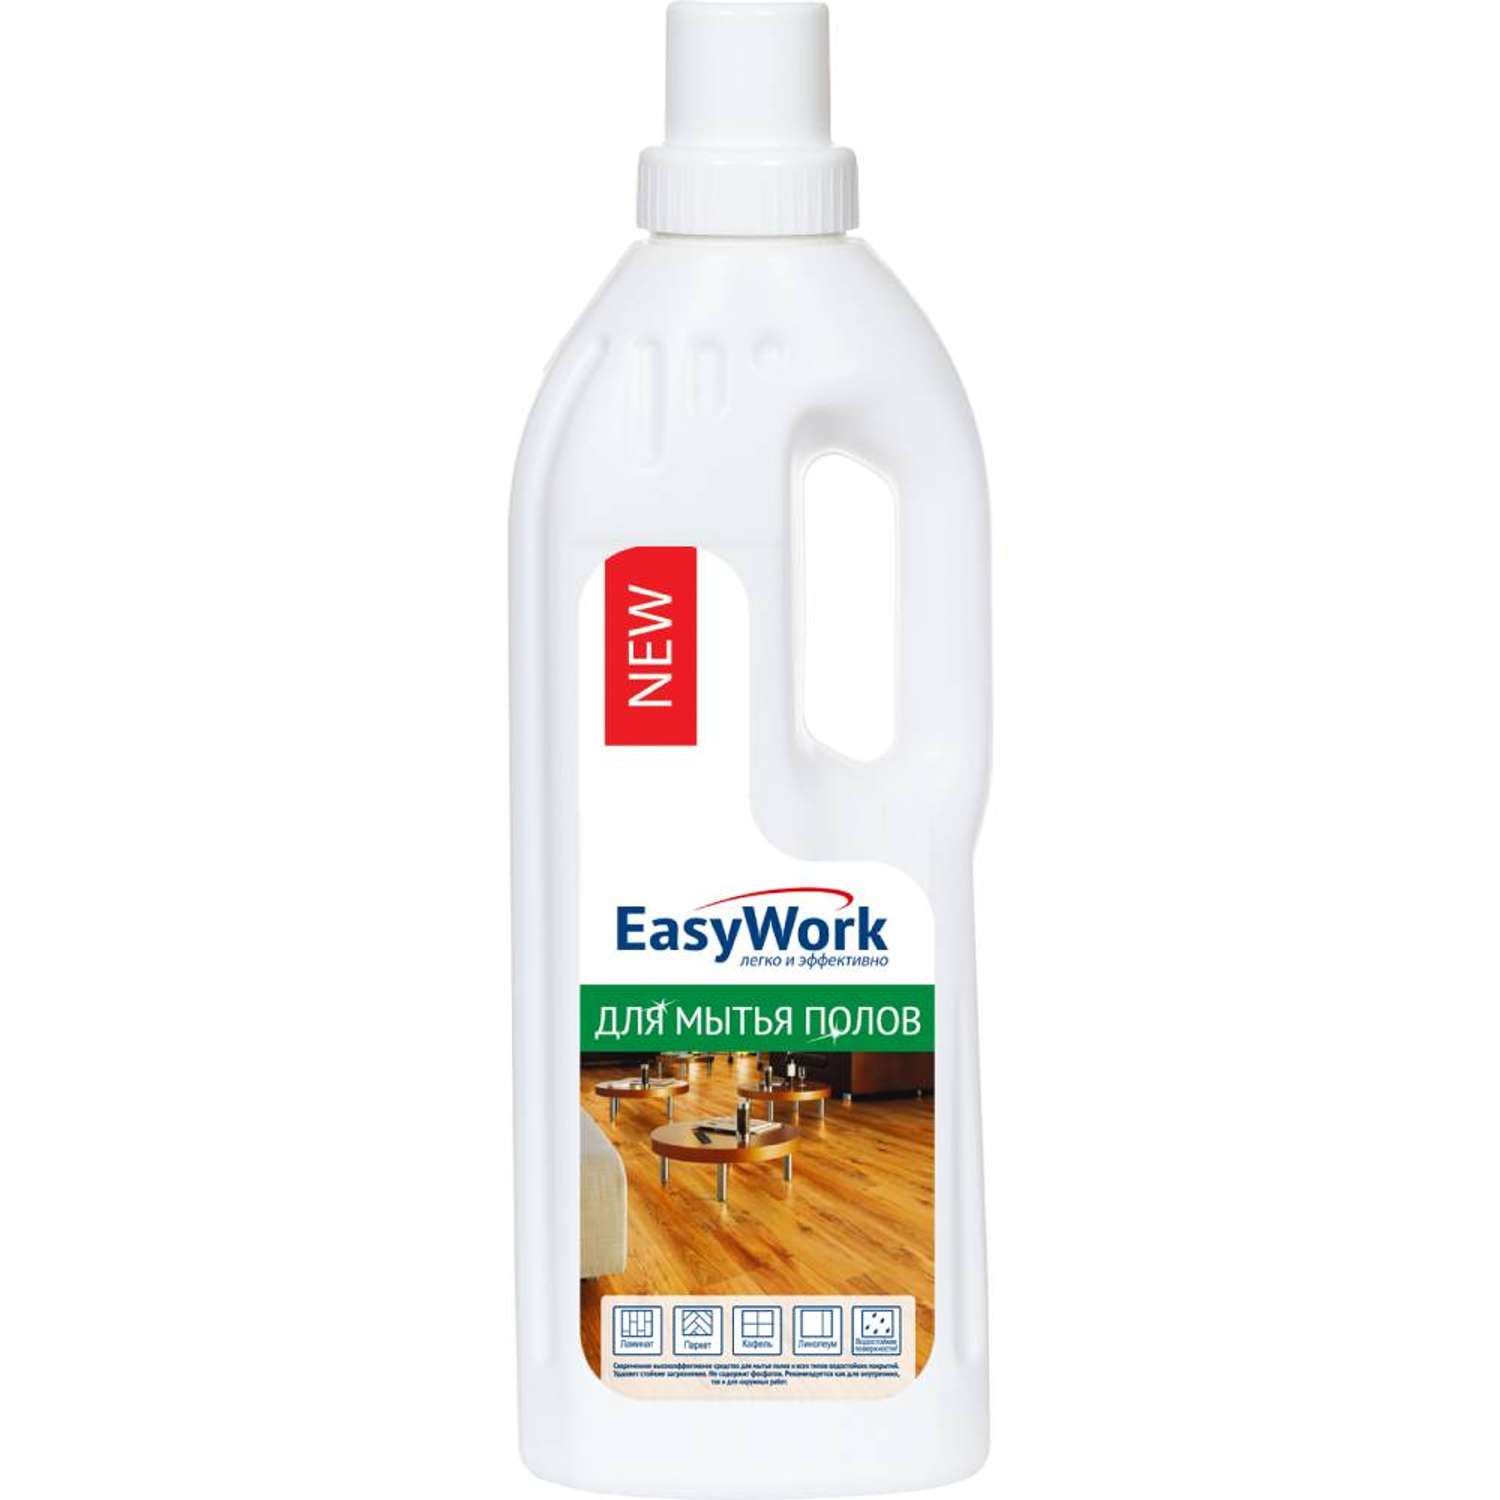 Средство для мытья пола EasyWork универсальное с дезинфицирующим эффектом 750 мл - фото 1